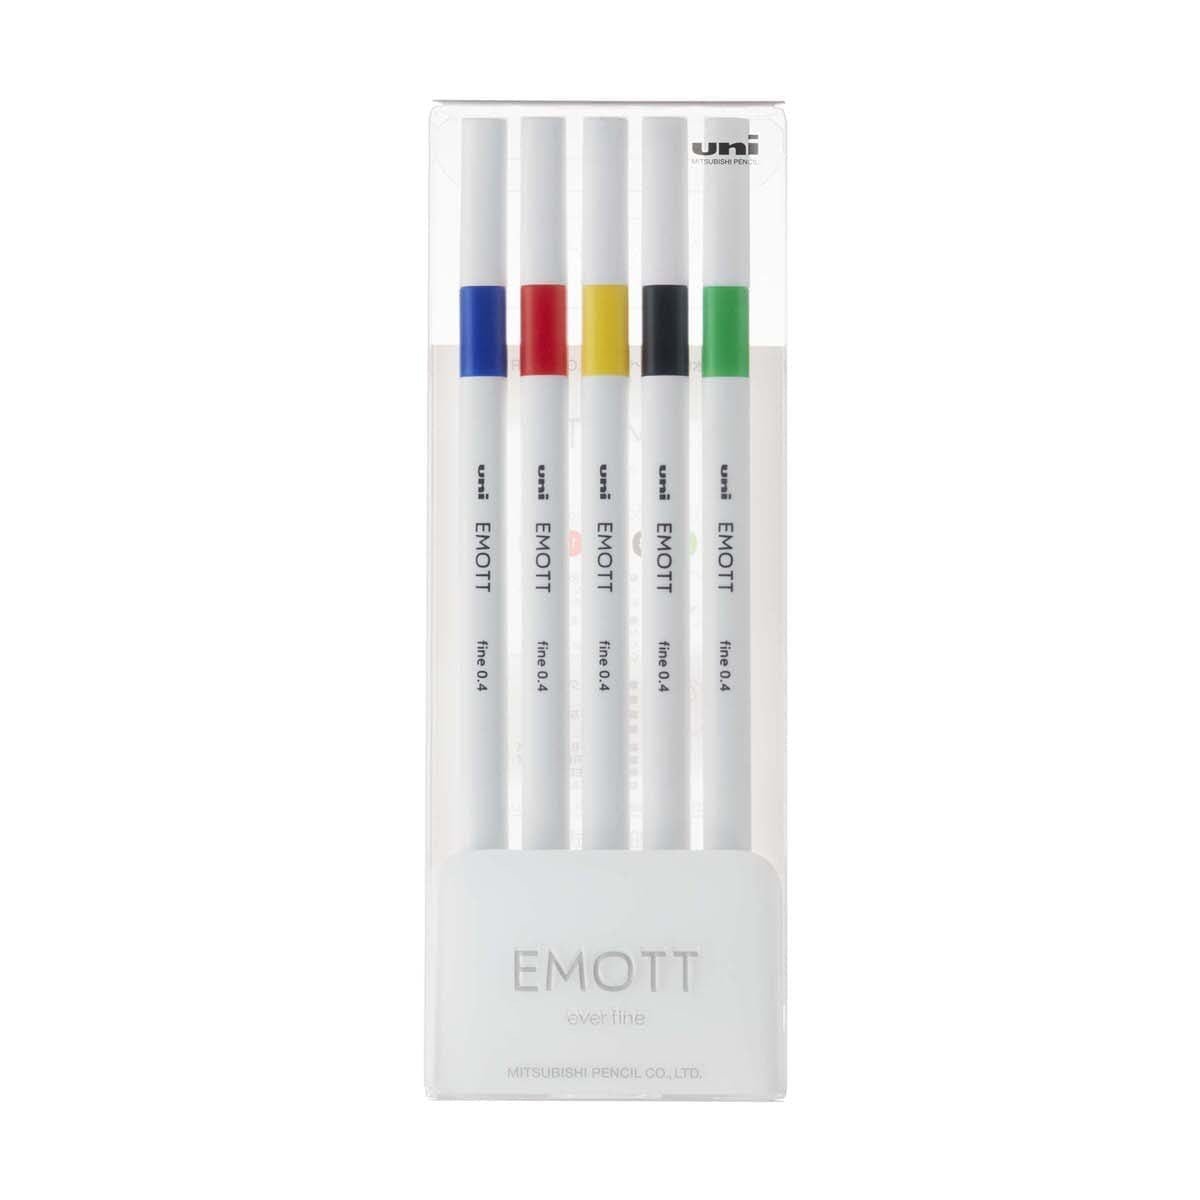 Emott ever fine Fineliner 5-set - No: 1 Vivid color - Uni Mitsubishi Pencil - Tidformera